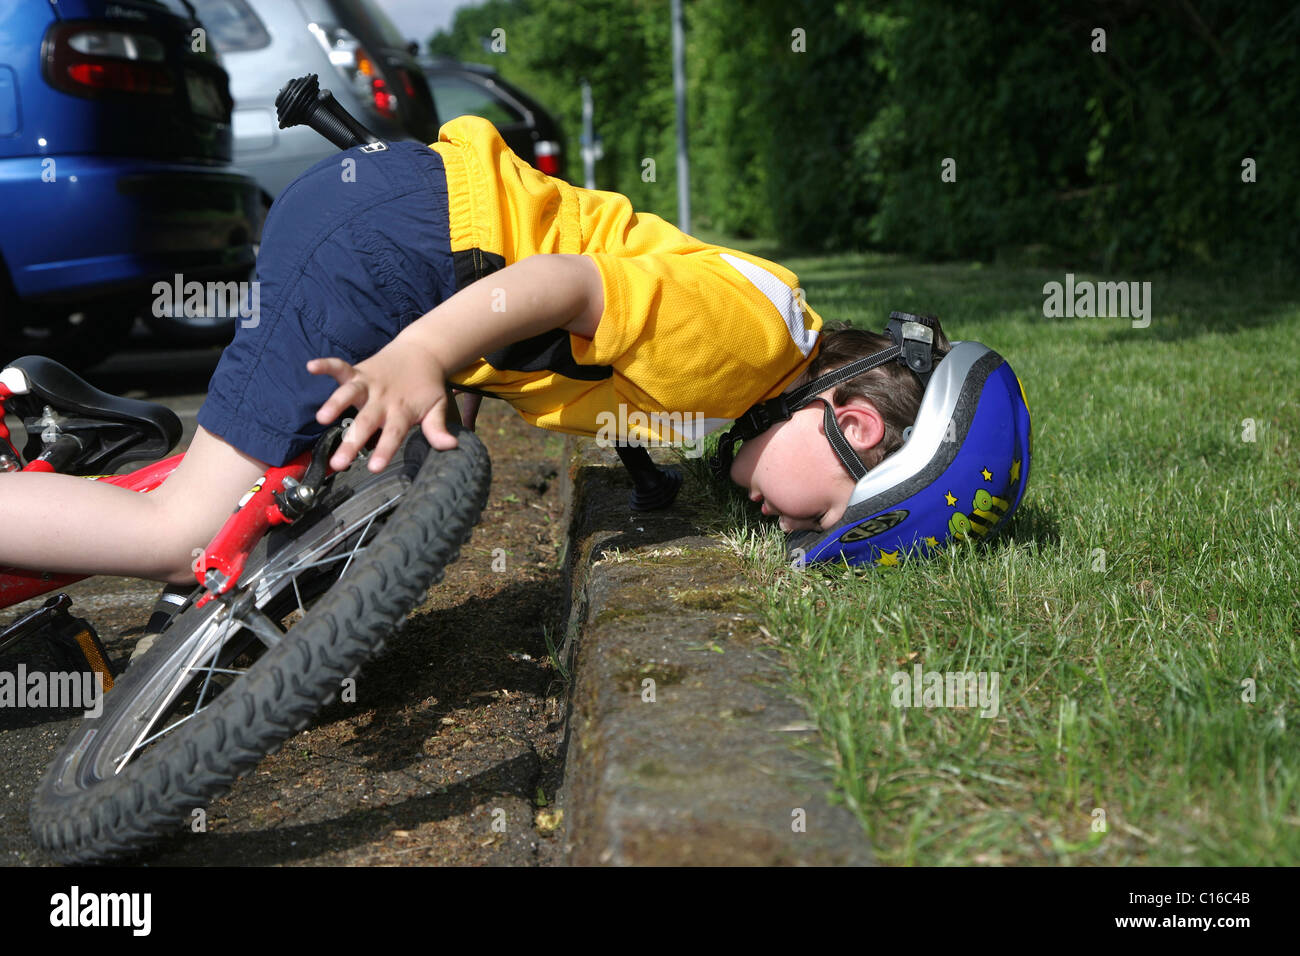 Petit garçon de cinq ans portant un casque de vélo de tomber de son vélo, pose photo Banque D'Images